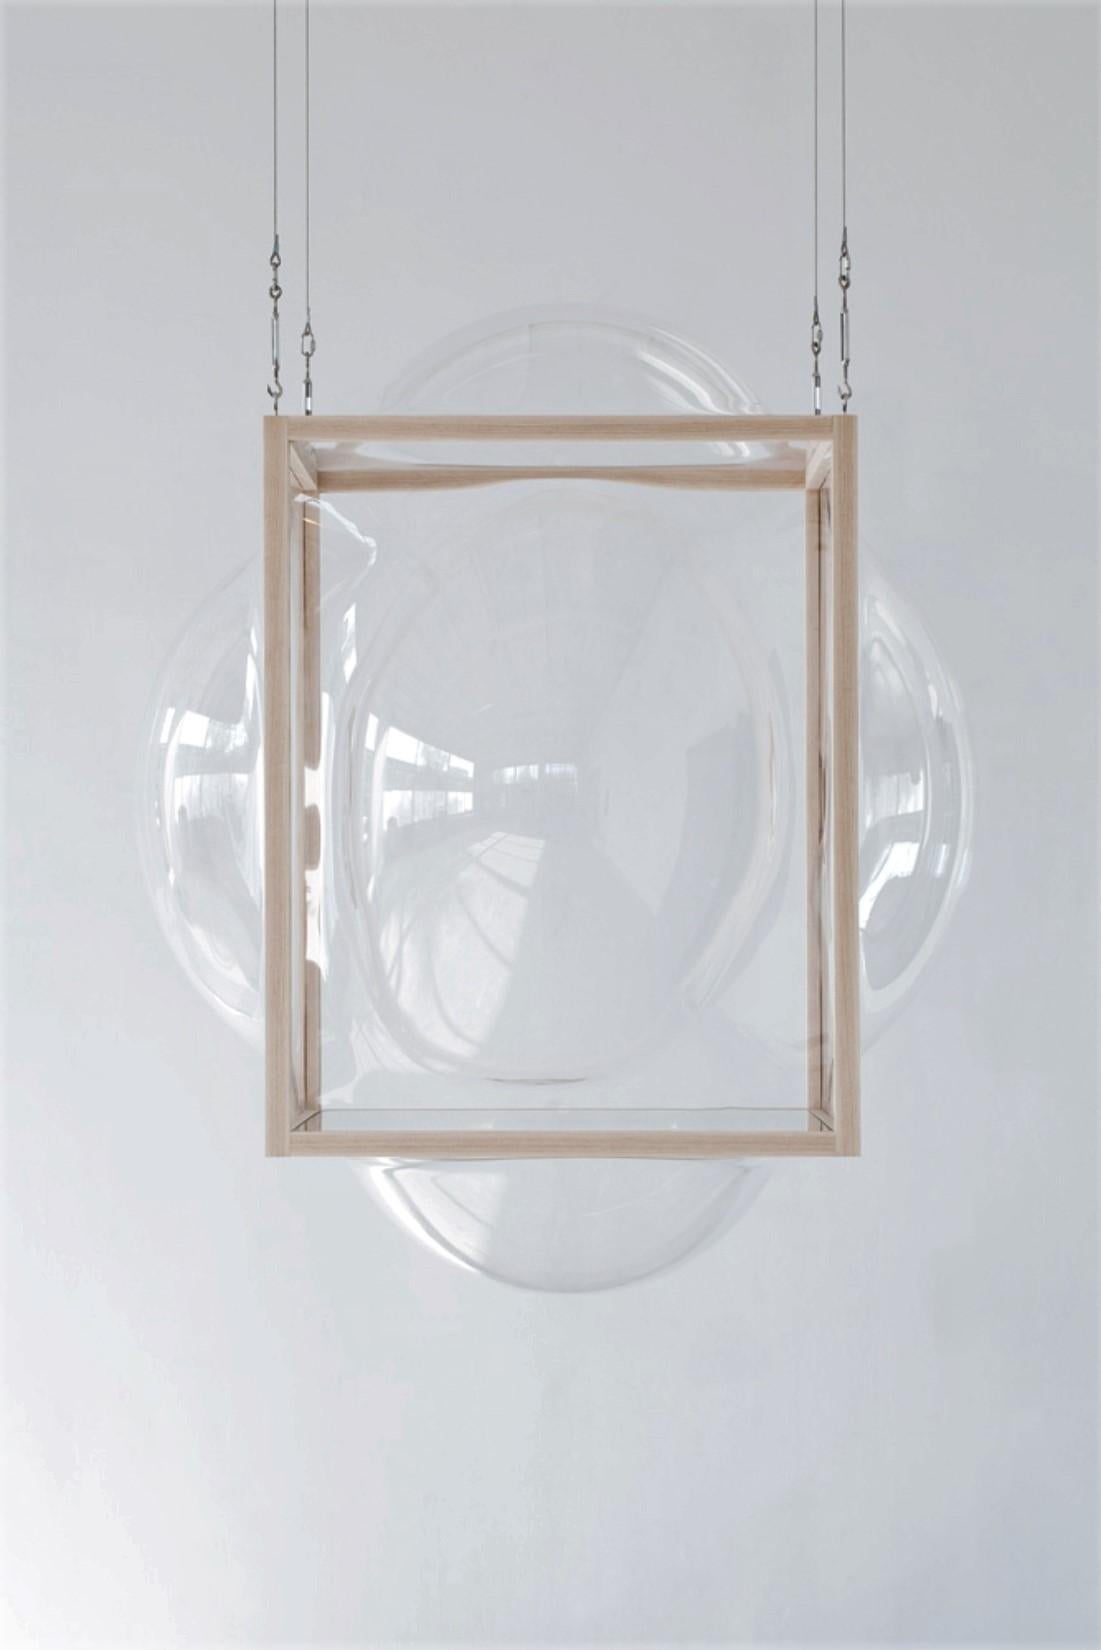 Großes hängendes Curator Bubble Cabinet von Studio Thier & van Daalen
Abmessungen: B 115 x T 115 x H 120 cm
MATERIALIEN: Esche, Acrylglas, Glas
Auch verfügbar: Zusätzliche Optionen verfügbar

Diese Seifenblasen in einem Holzrahmen erhellen